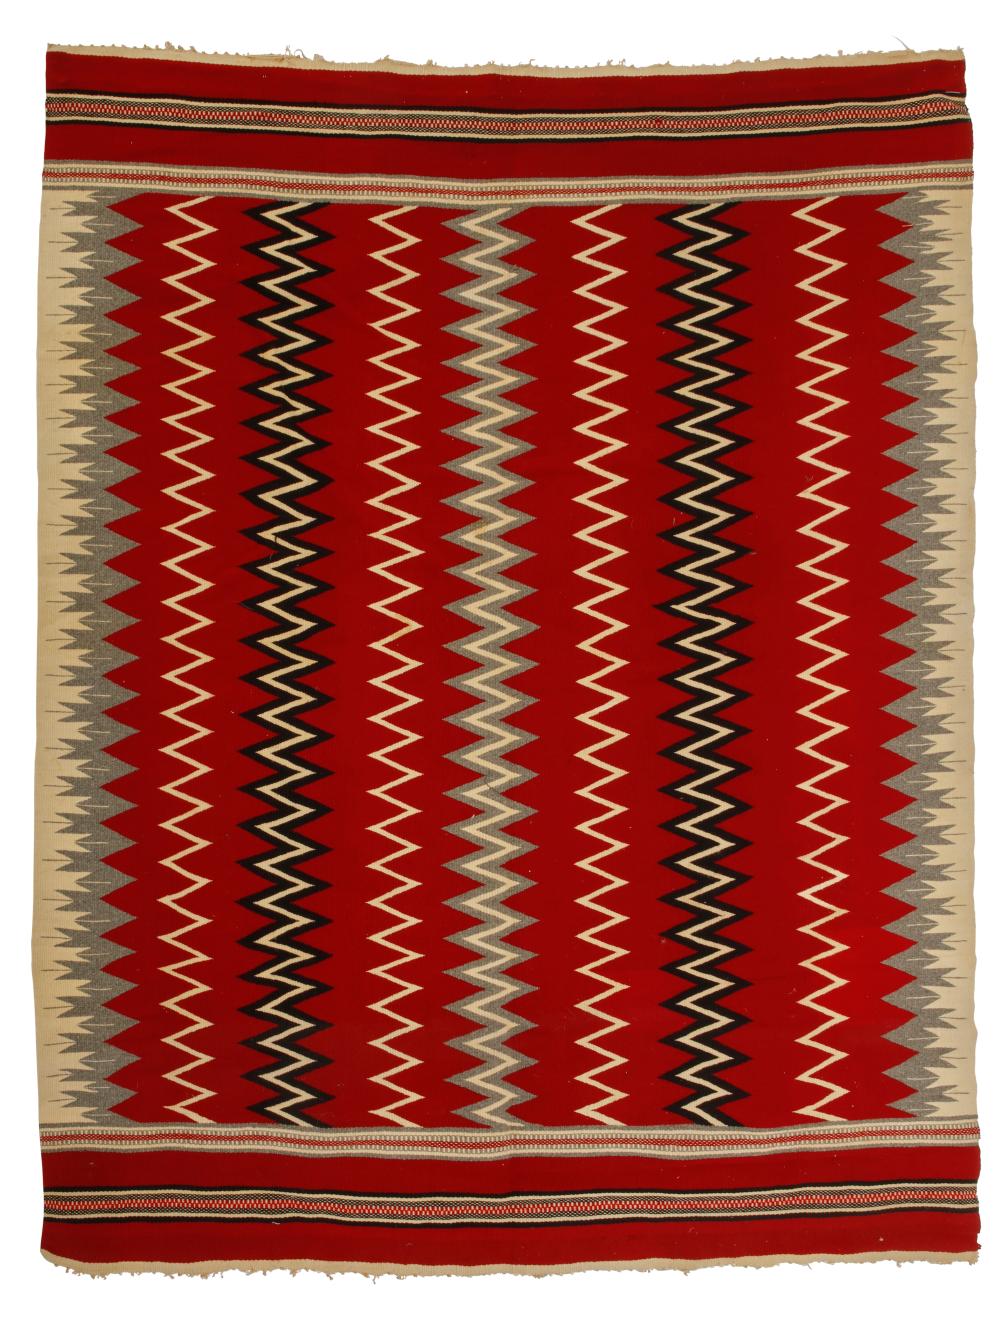 A MEXICAN TEXTILEA Mexican textile,